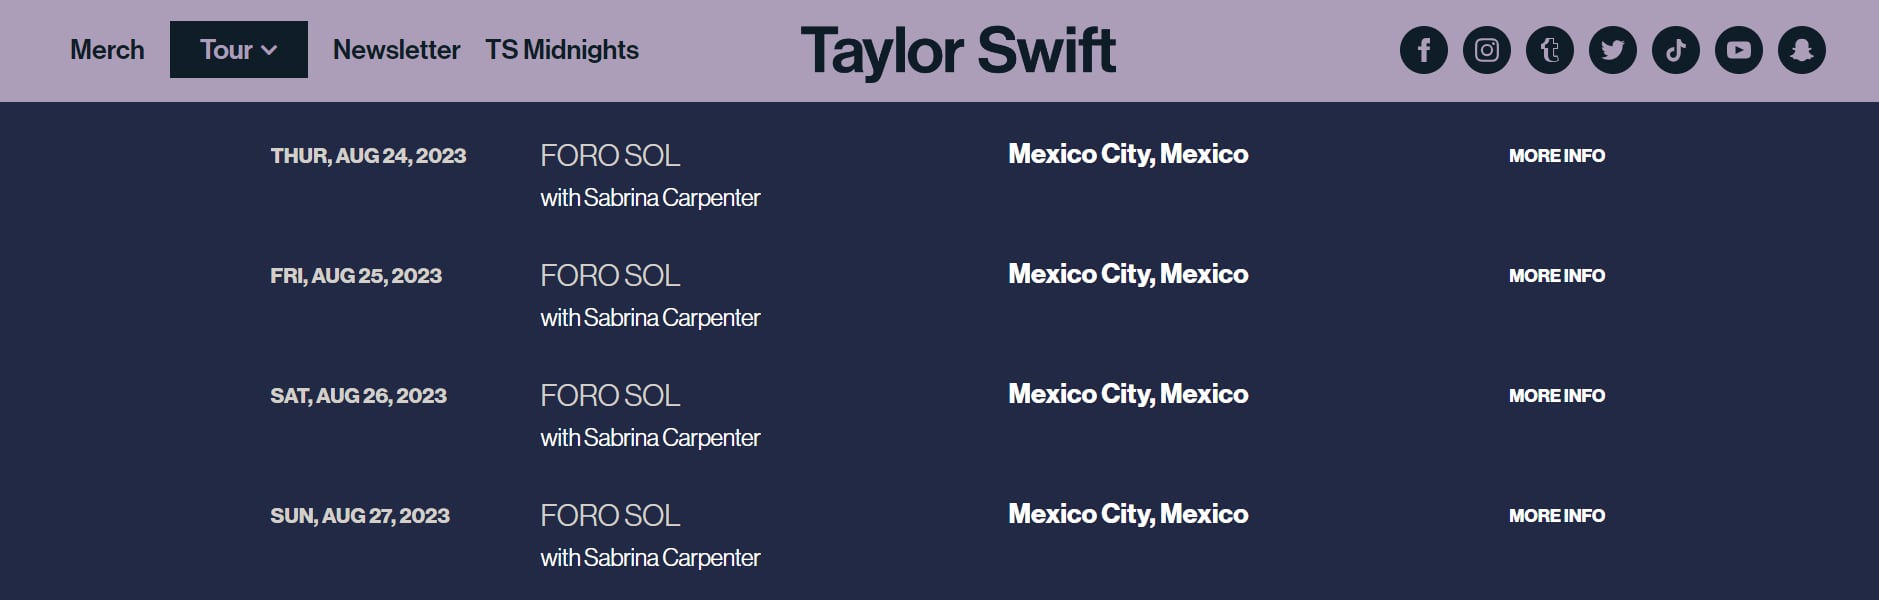 Captura de pantalla del sitio oficial de Taylor Swift. (Foto: www.taylorswift.com)